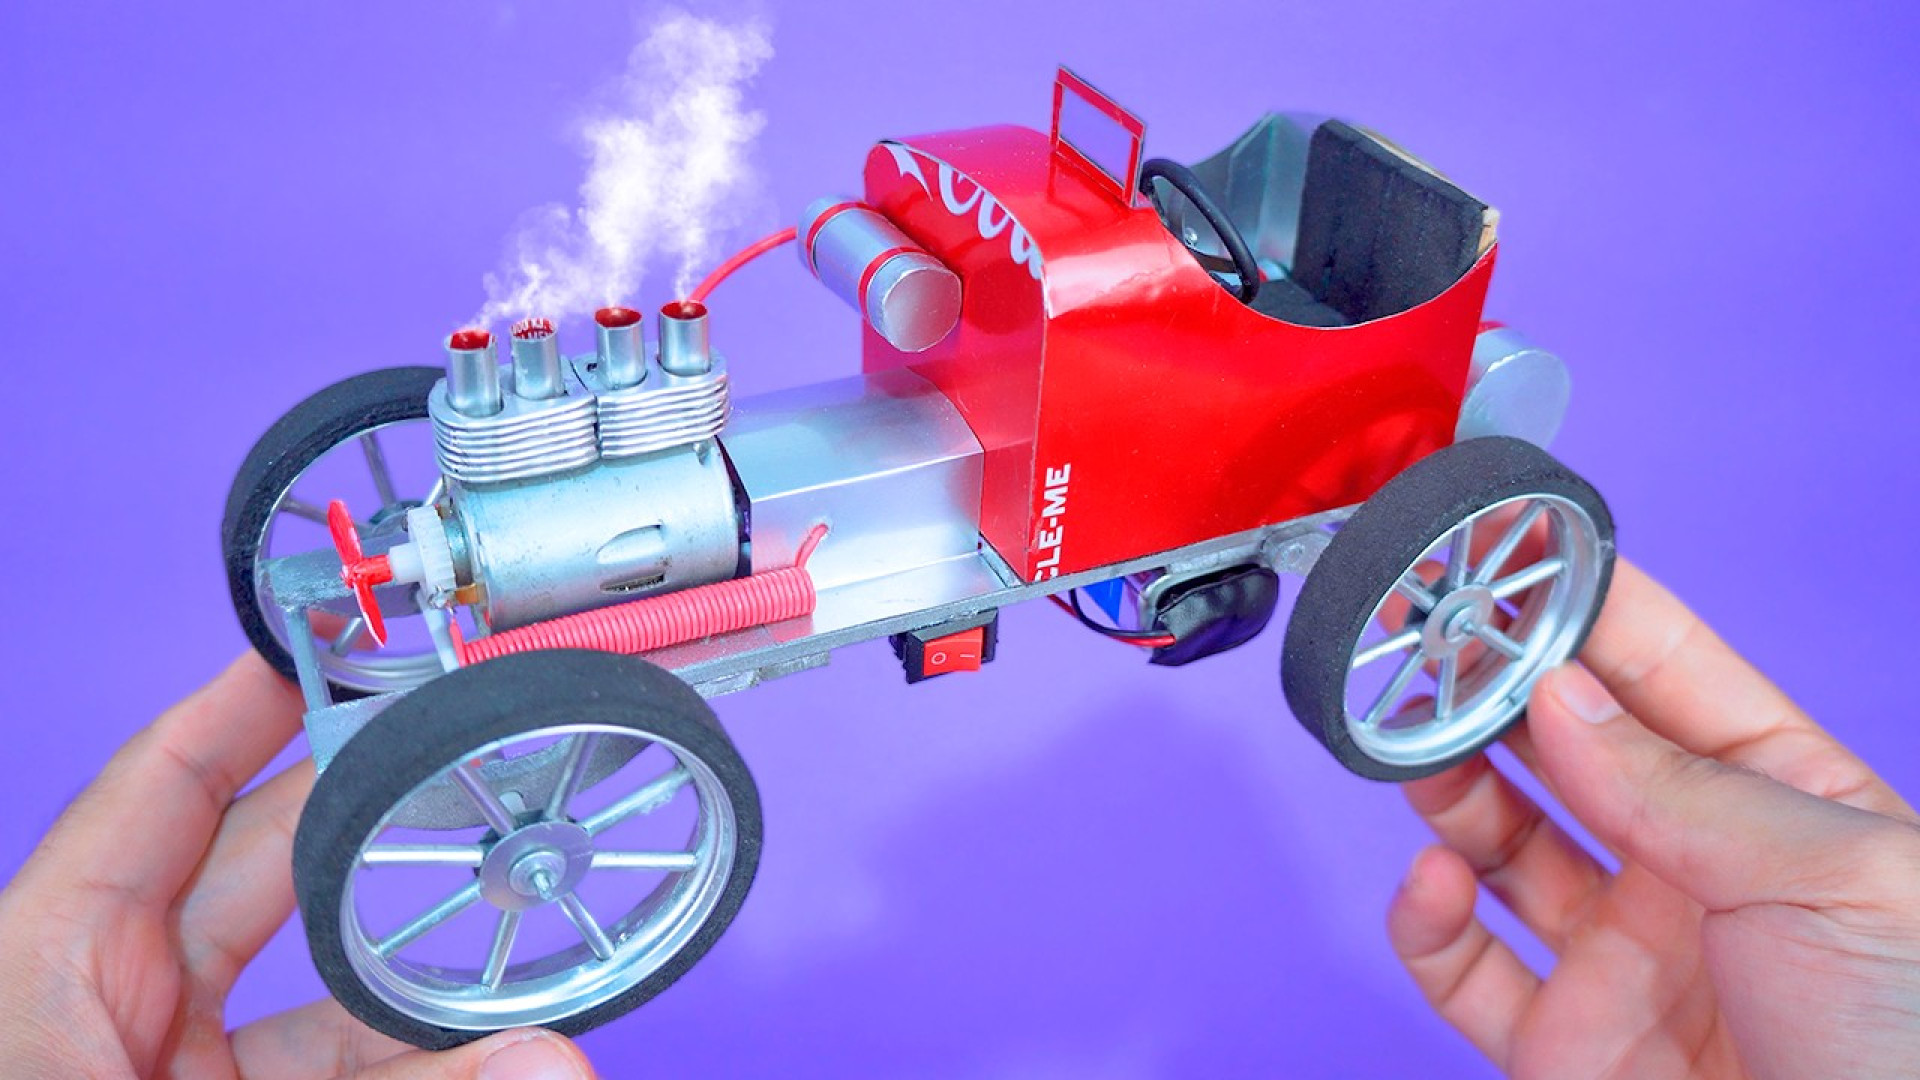 آموزش ساخت ماشین کلاسیک با قوطی نوشابه کوکا , کاردستی با وسایل دورریختنی